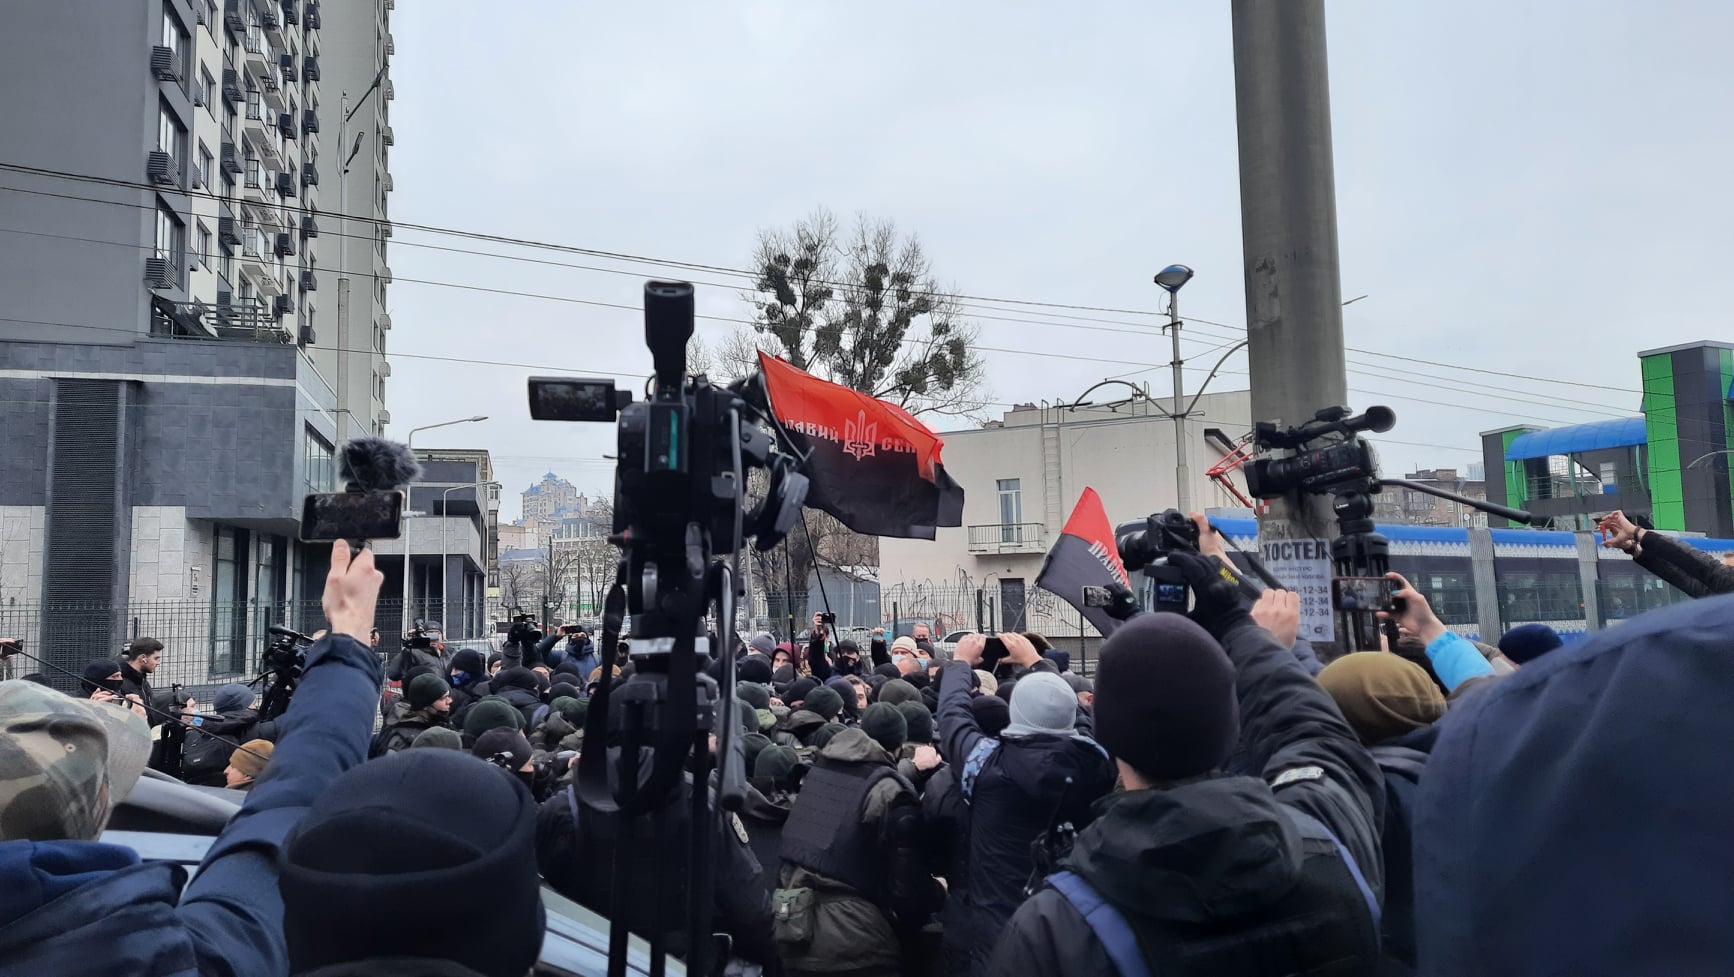 Під телеканалами «НАШ» та «Інтер» збираються протестувальники: вимагають закрити канали